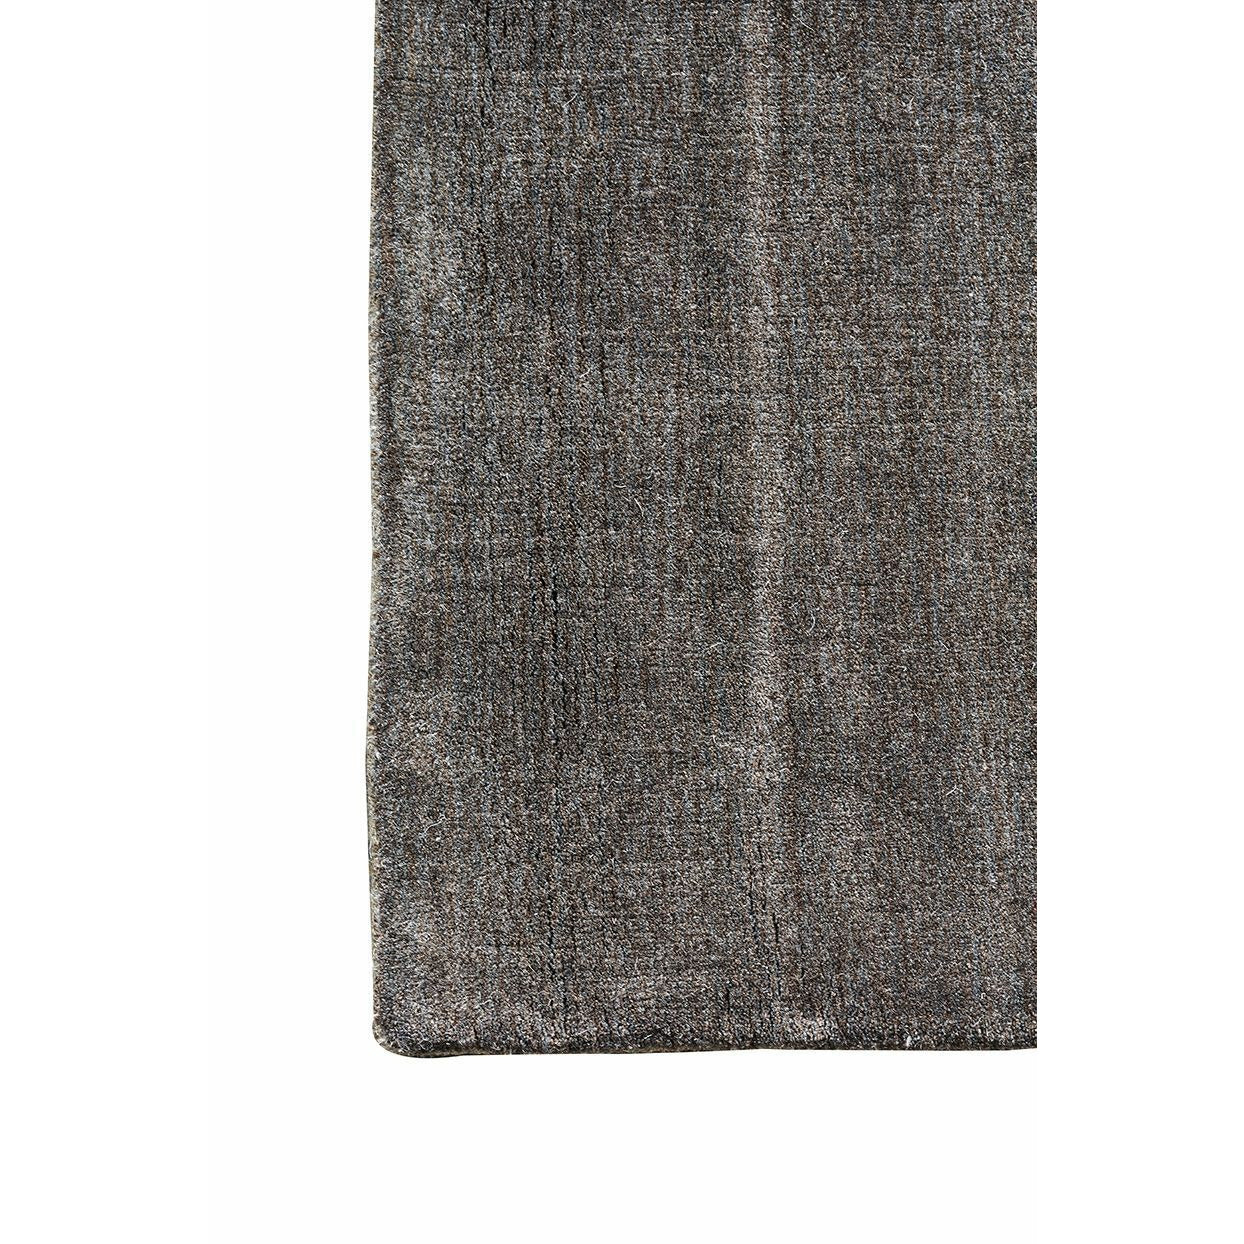 Massimo Erde Bambusteppich Warm Grau, 300x400 Cm